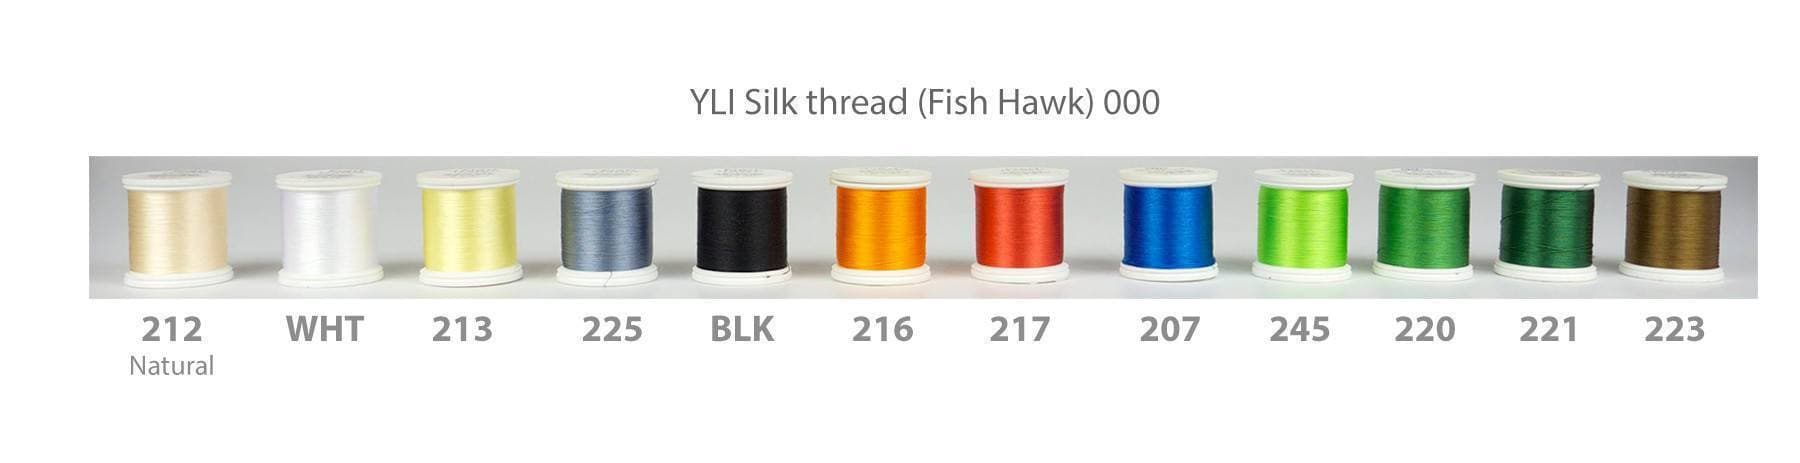 Silk Wrapping Thread